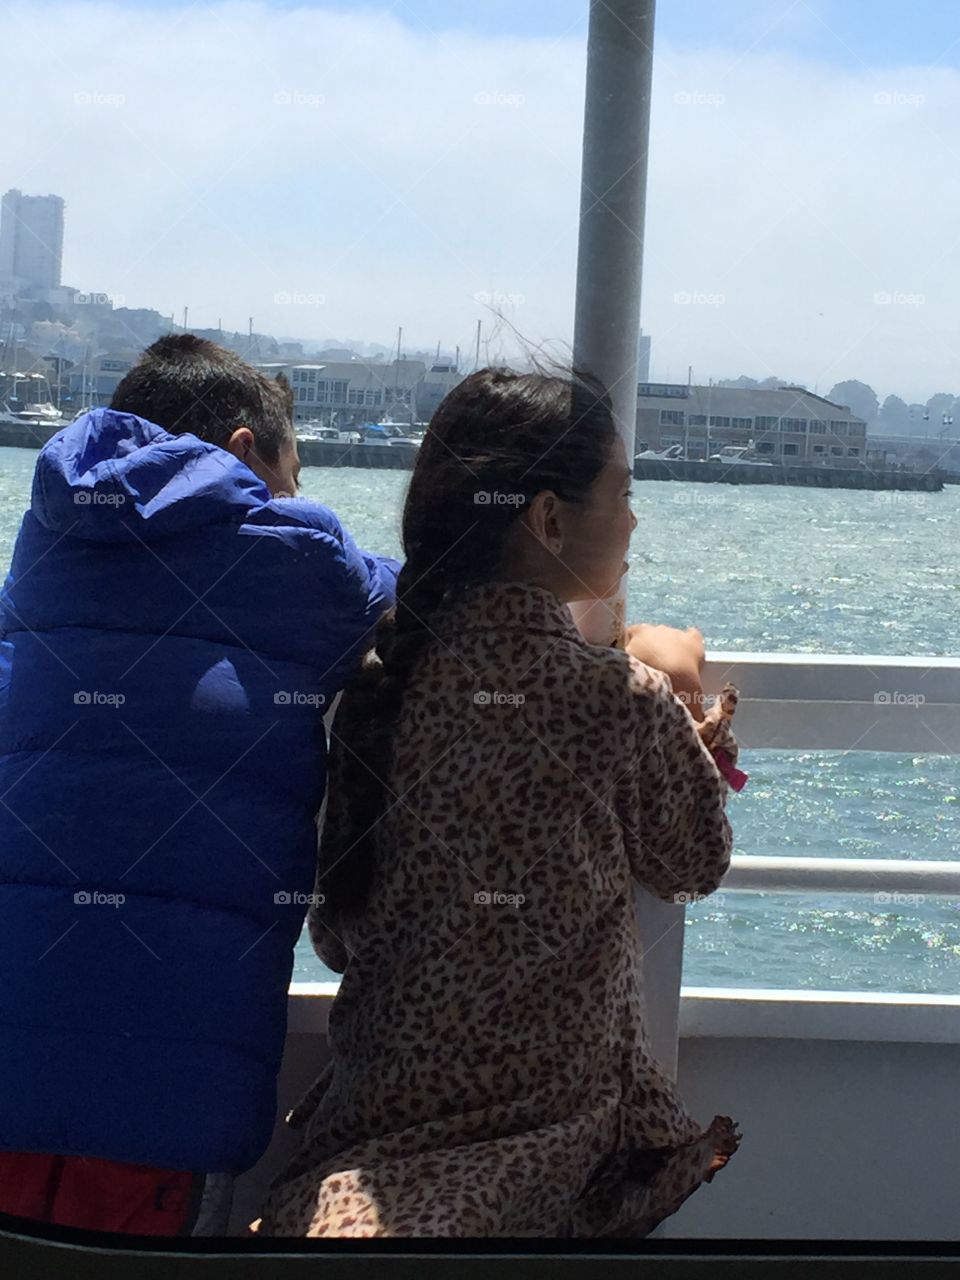 Sea, ocean, water, boat, boating, vacation, Alcatraz,